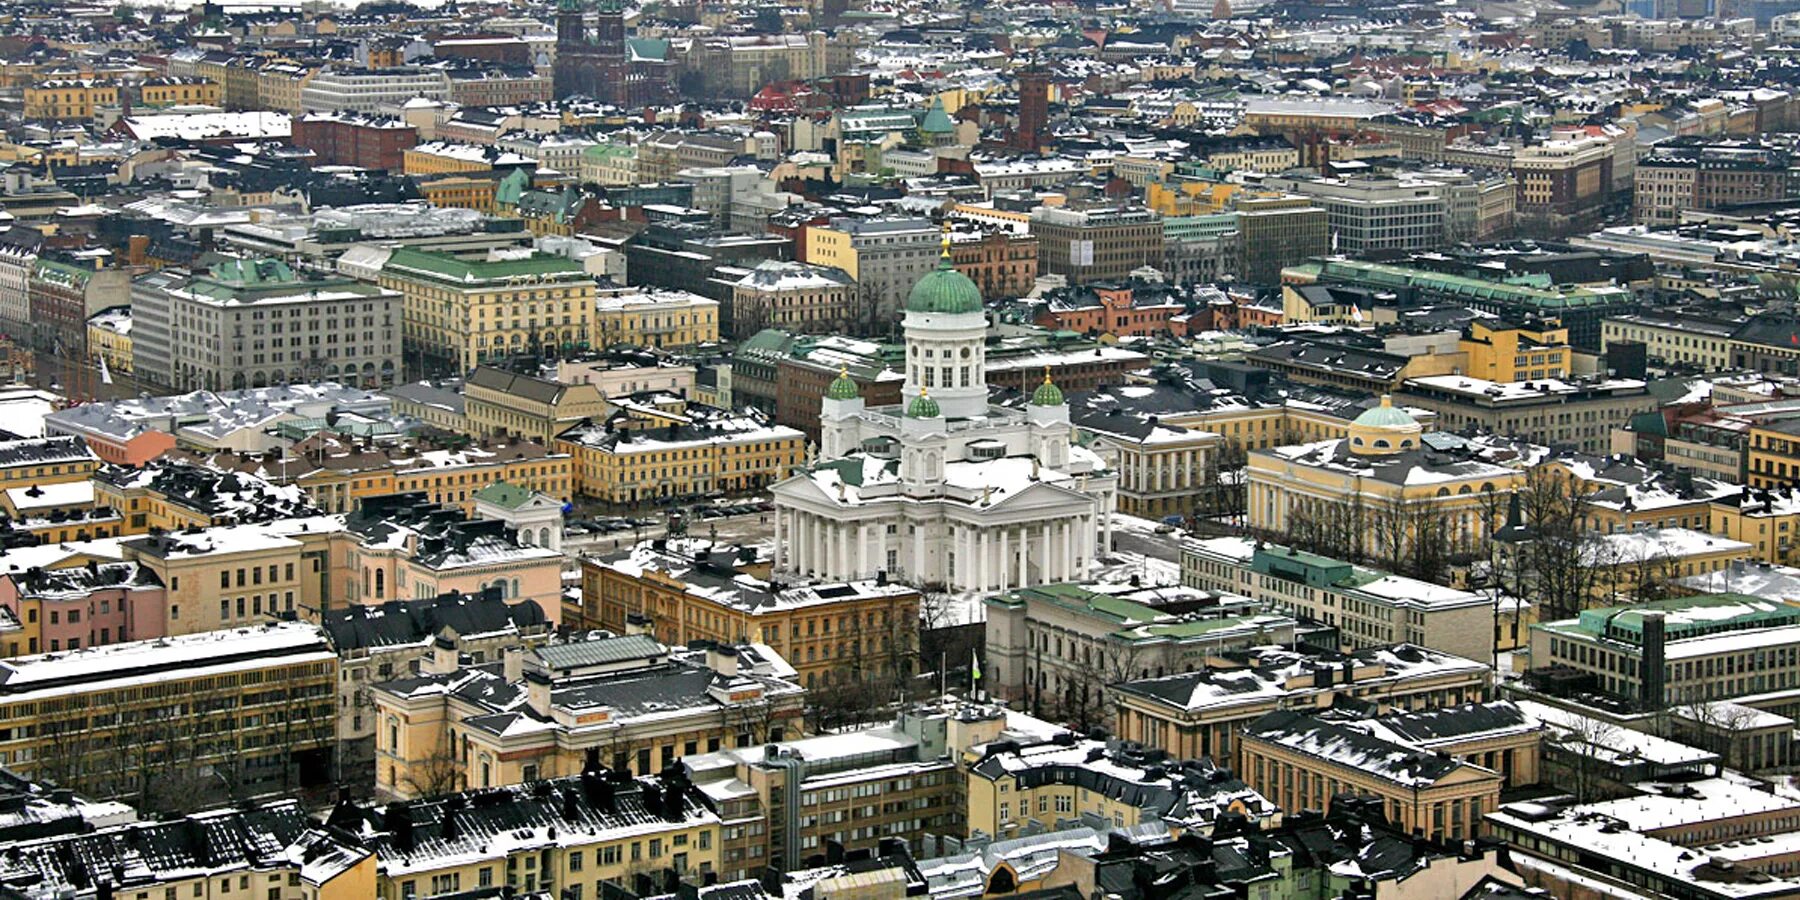 Столица города хельсинки. Финляндия Хельсинки. Хельсинки столица. Столица Финляндии город Хельсинки. Хельсинки столица Финляндии достопримечательности.